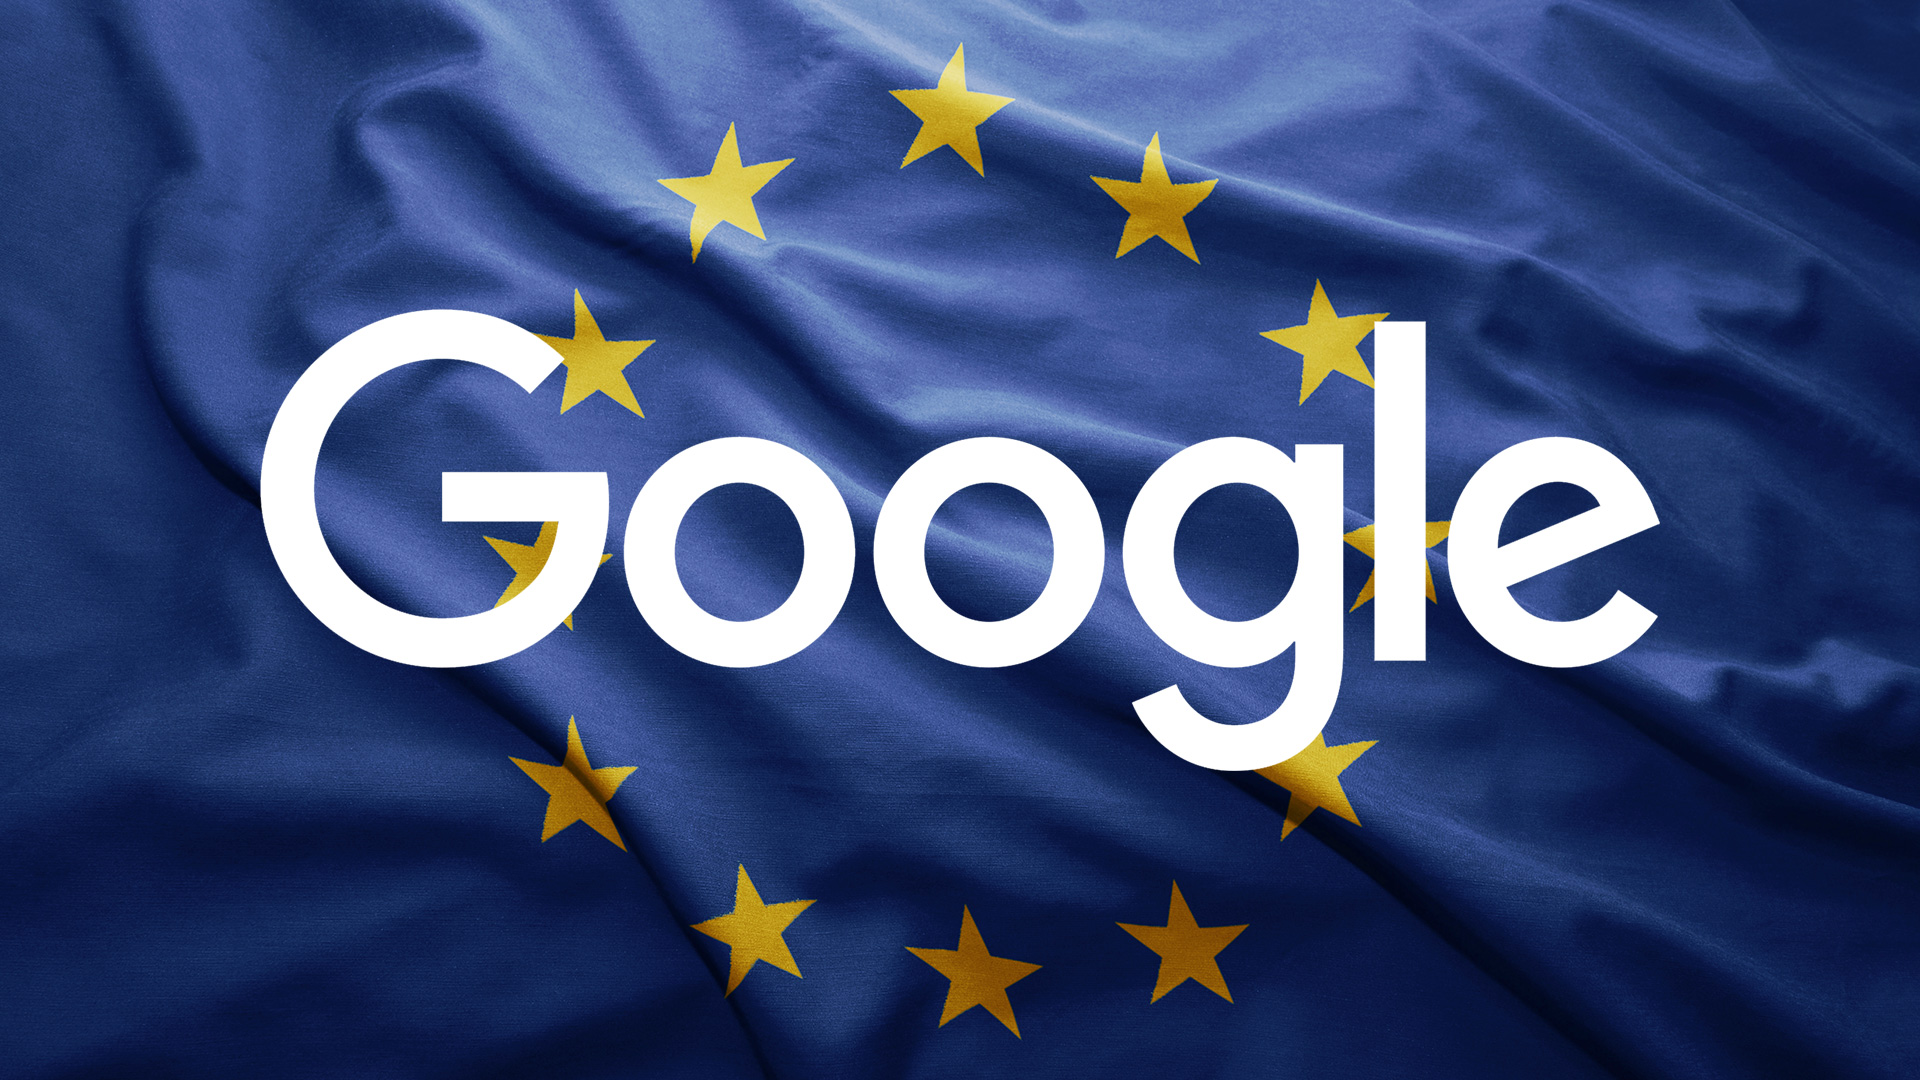 Googlu nevyšlo odvolání proti rekordní pokutě udělenou EU za monopol